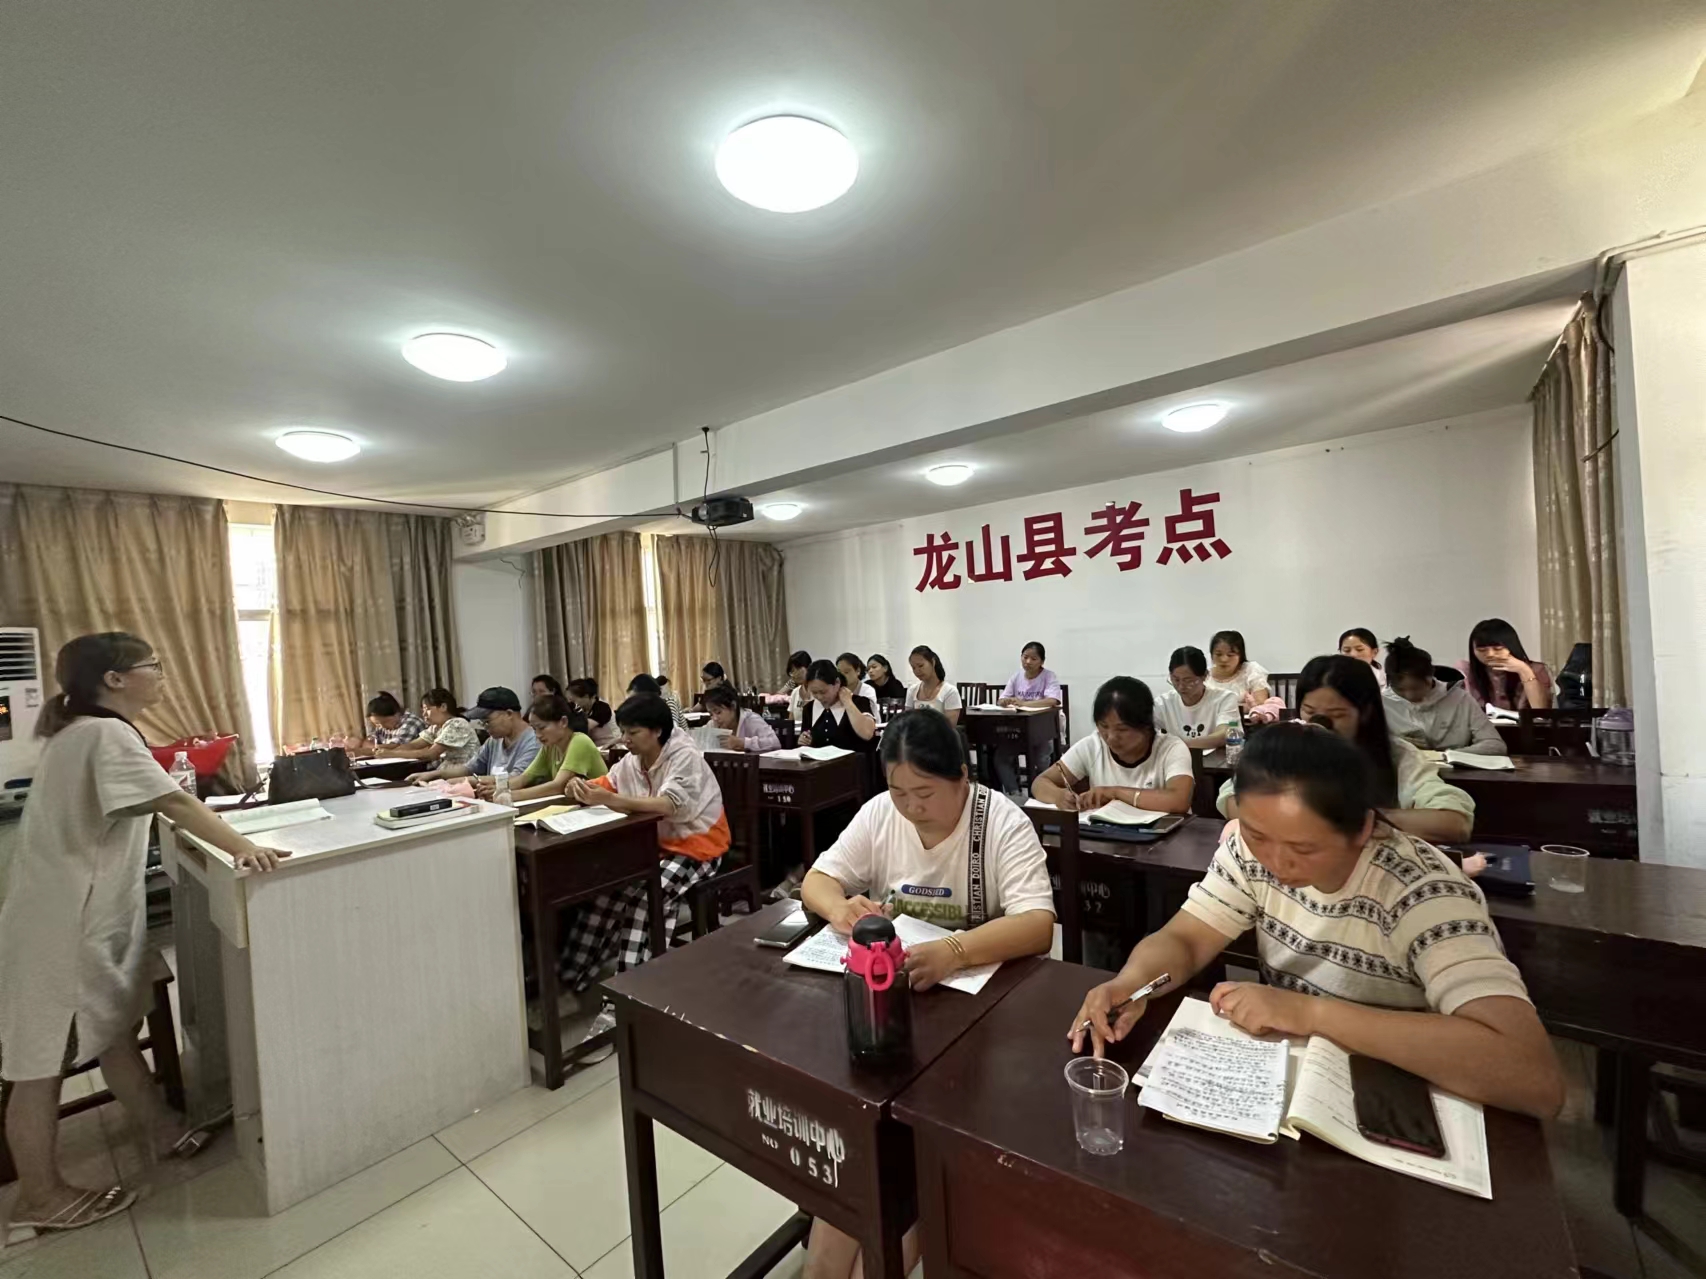 龙山县技工学校开展保育师技能培训 助力乡村人才振兴